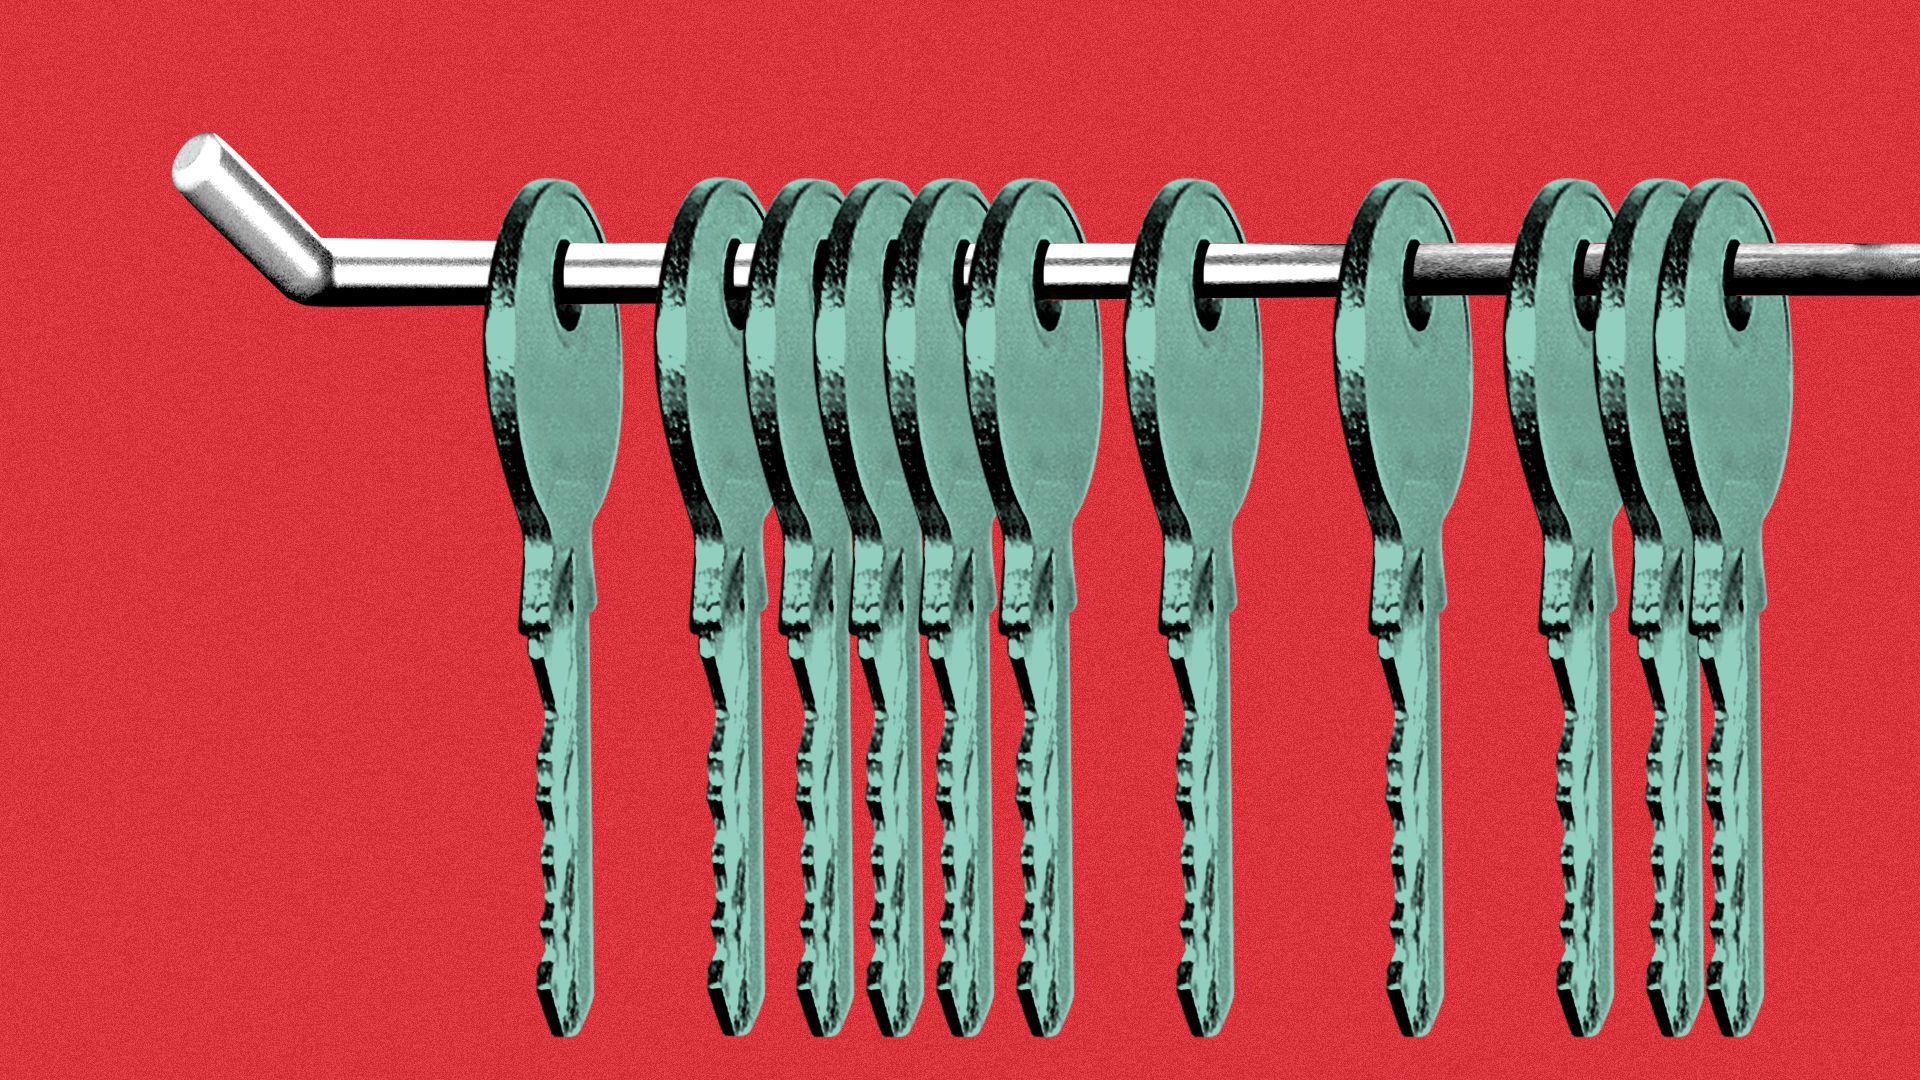 Illustration of a rack holding several keys.